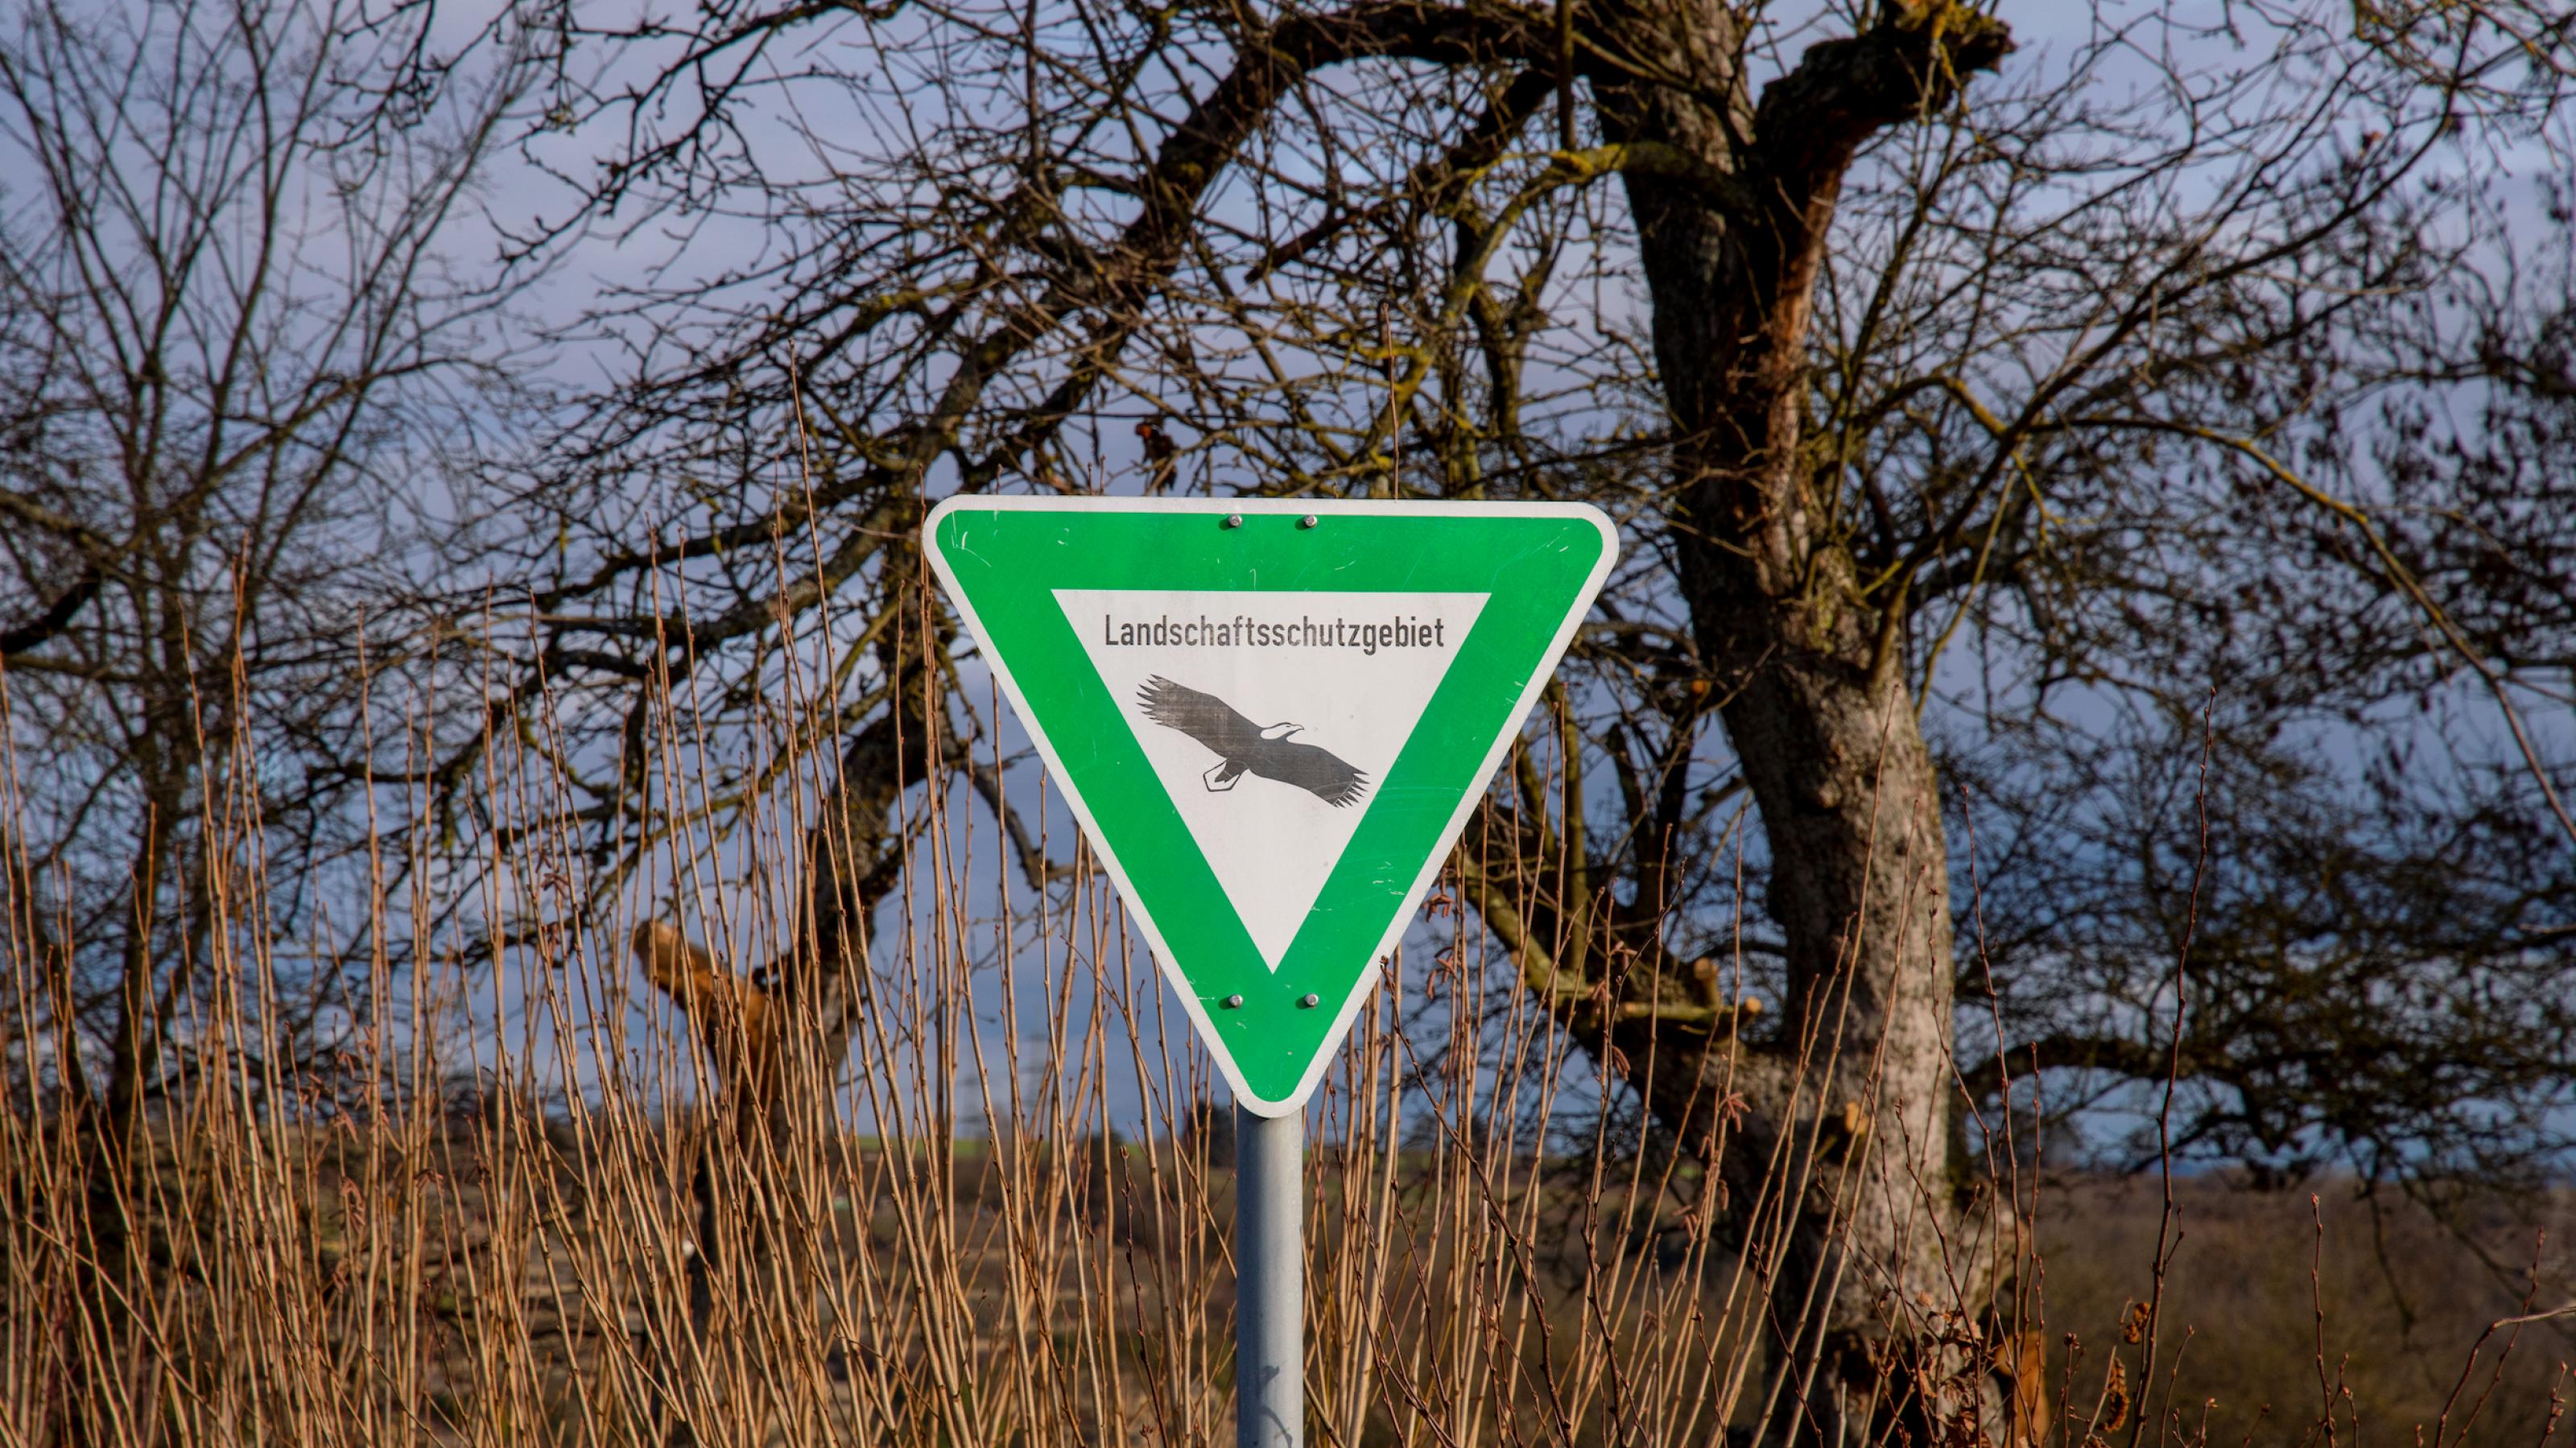 Dreieckiges Schild mit grünem Rahmen und der Aufschrift „Landschaftsschutzgebiet“ samt Adler mitten in der Natur.